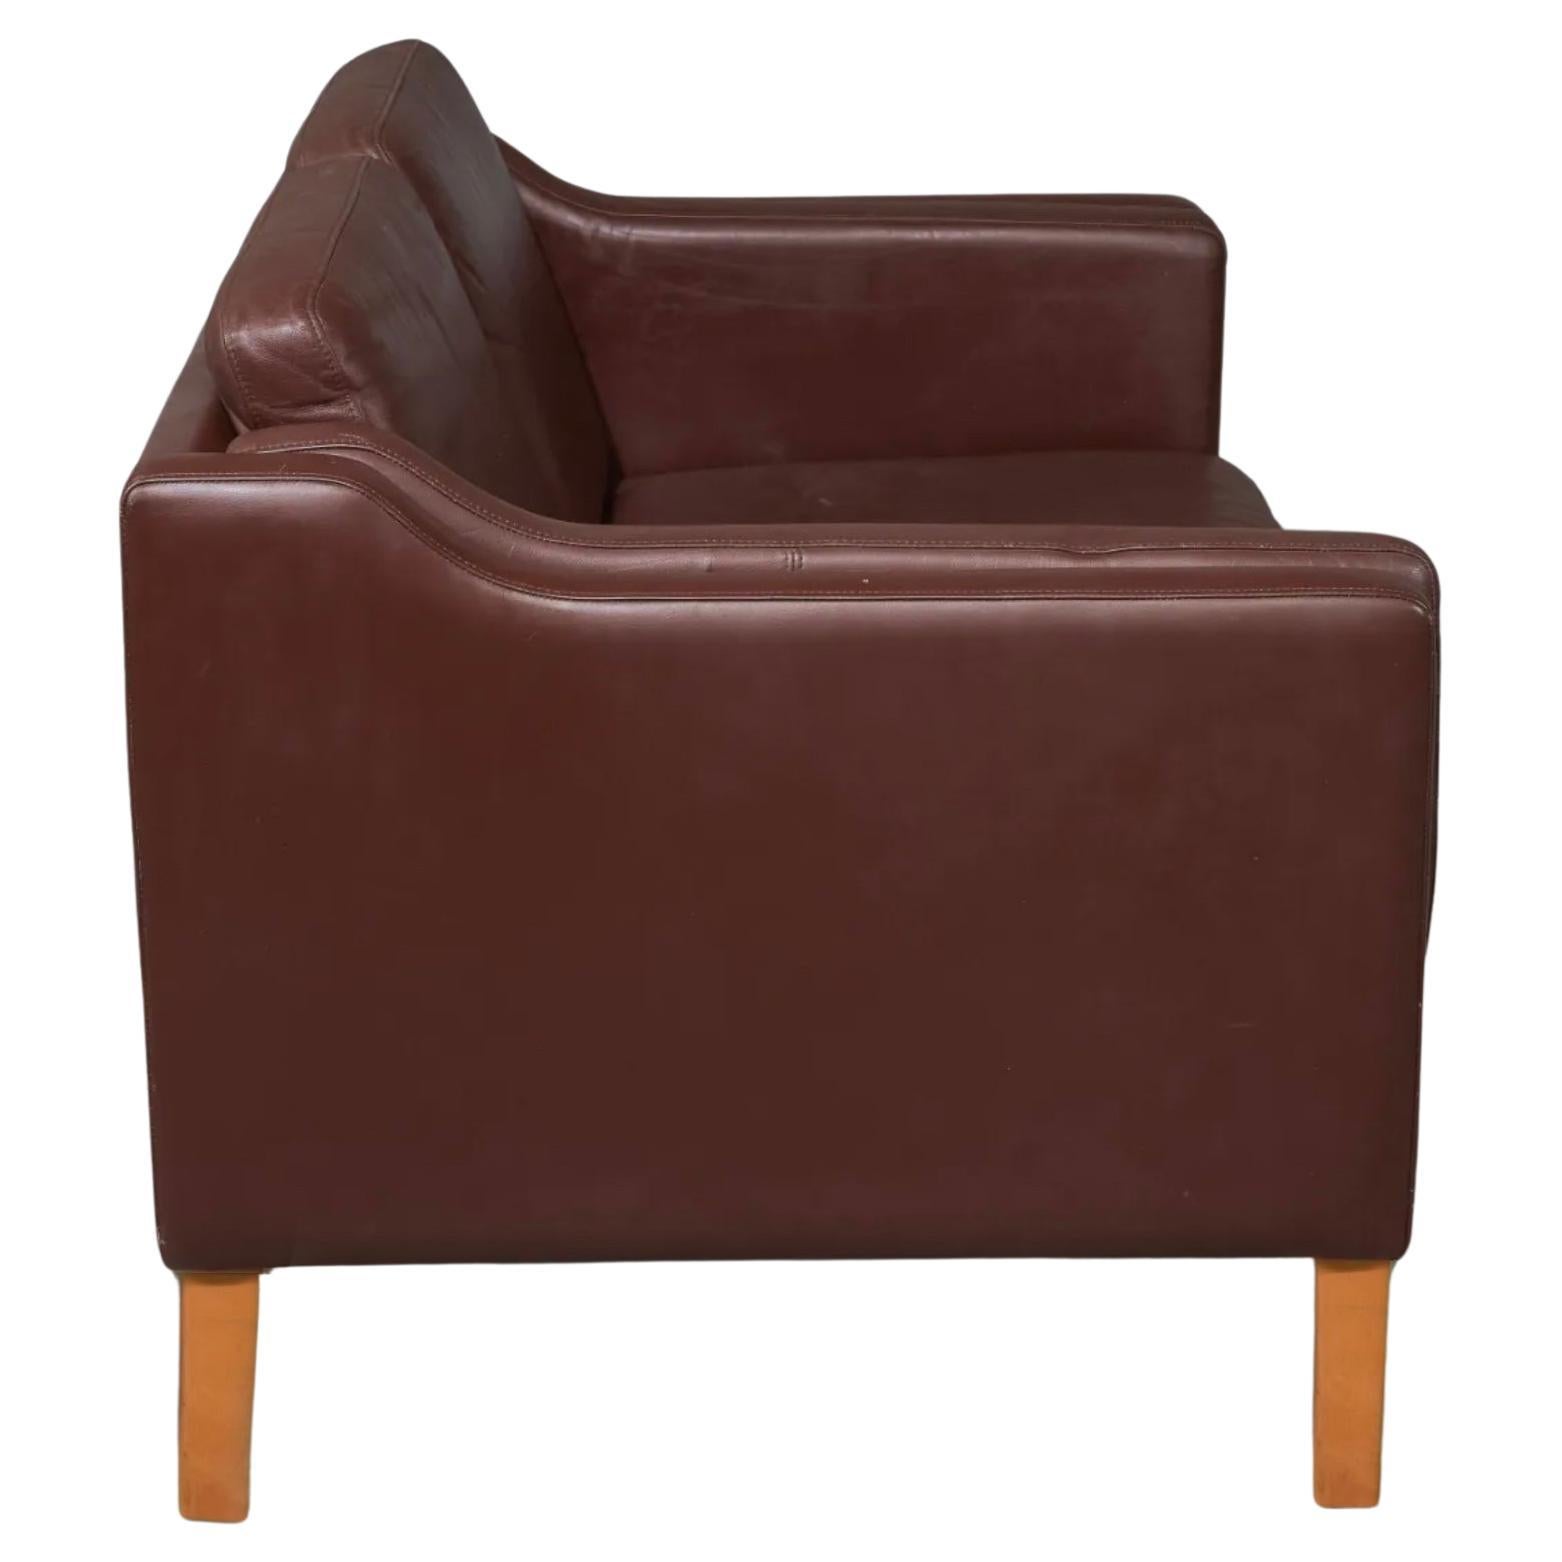 The Modern Scandinavian Brown Brown Leather Two Seater Sofa or Loveseat in the style of Borge Mogensen. Canapé en cuir souple brun foncé sur pieds en bouleau massif. Superbe design. Fabriqué au Danemark Situé à Brooklyn NYC.

Mesure 52